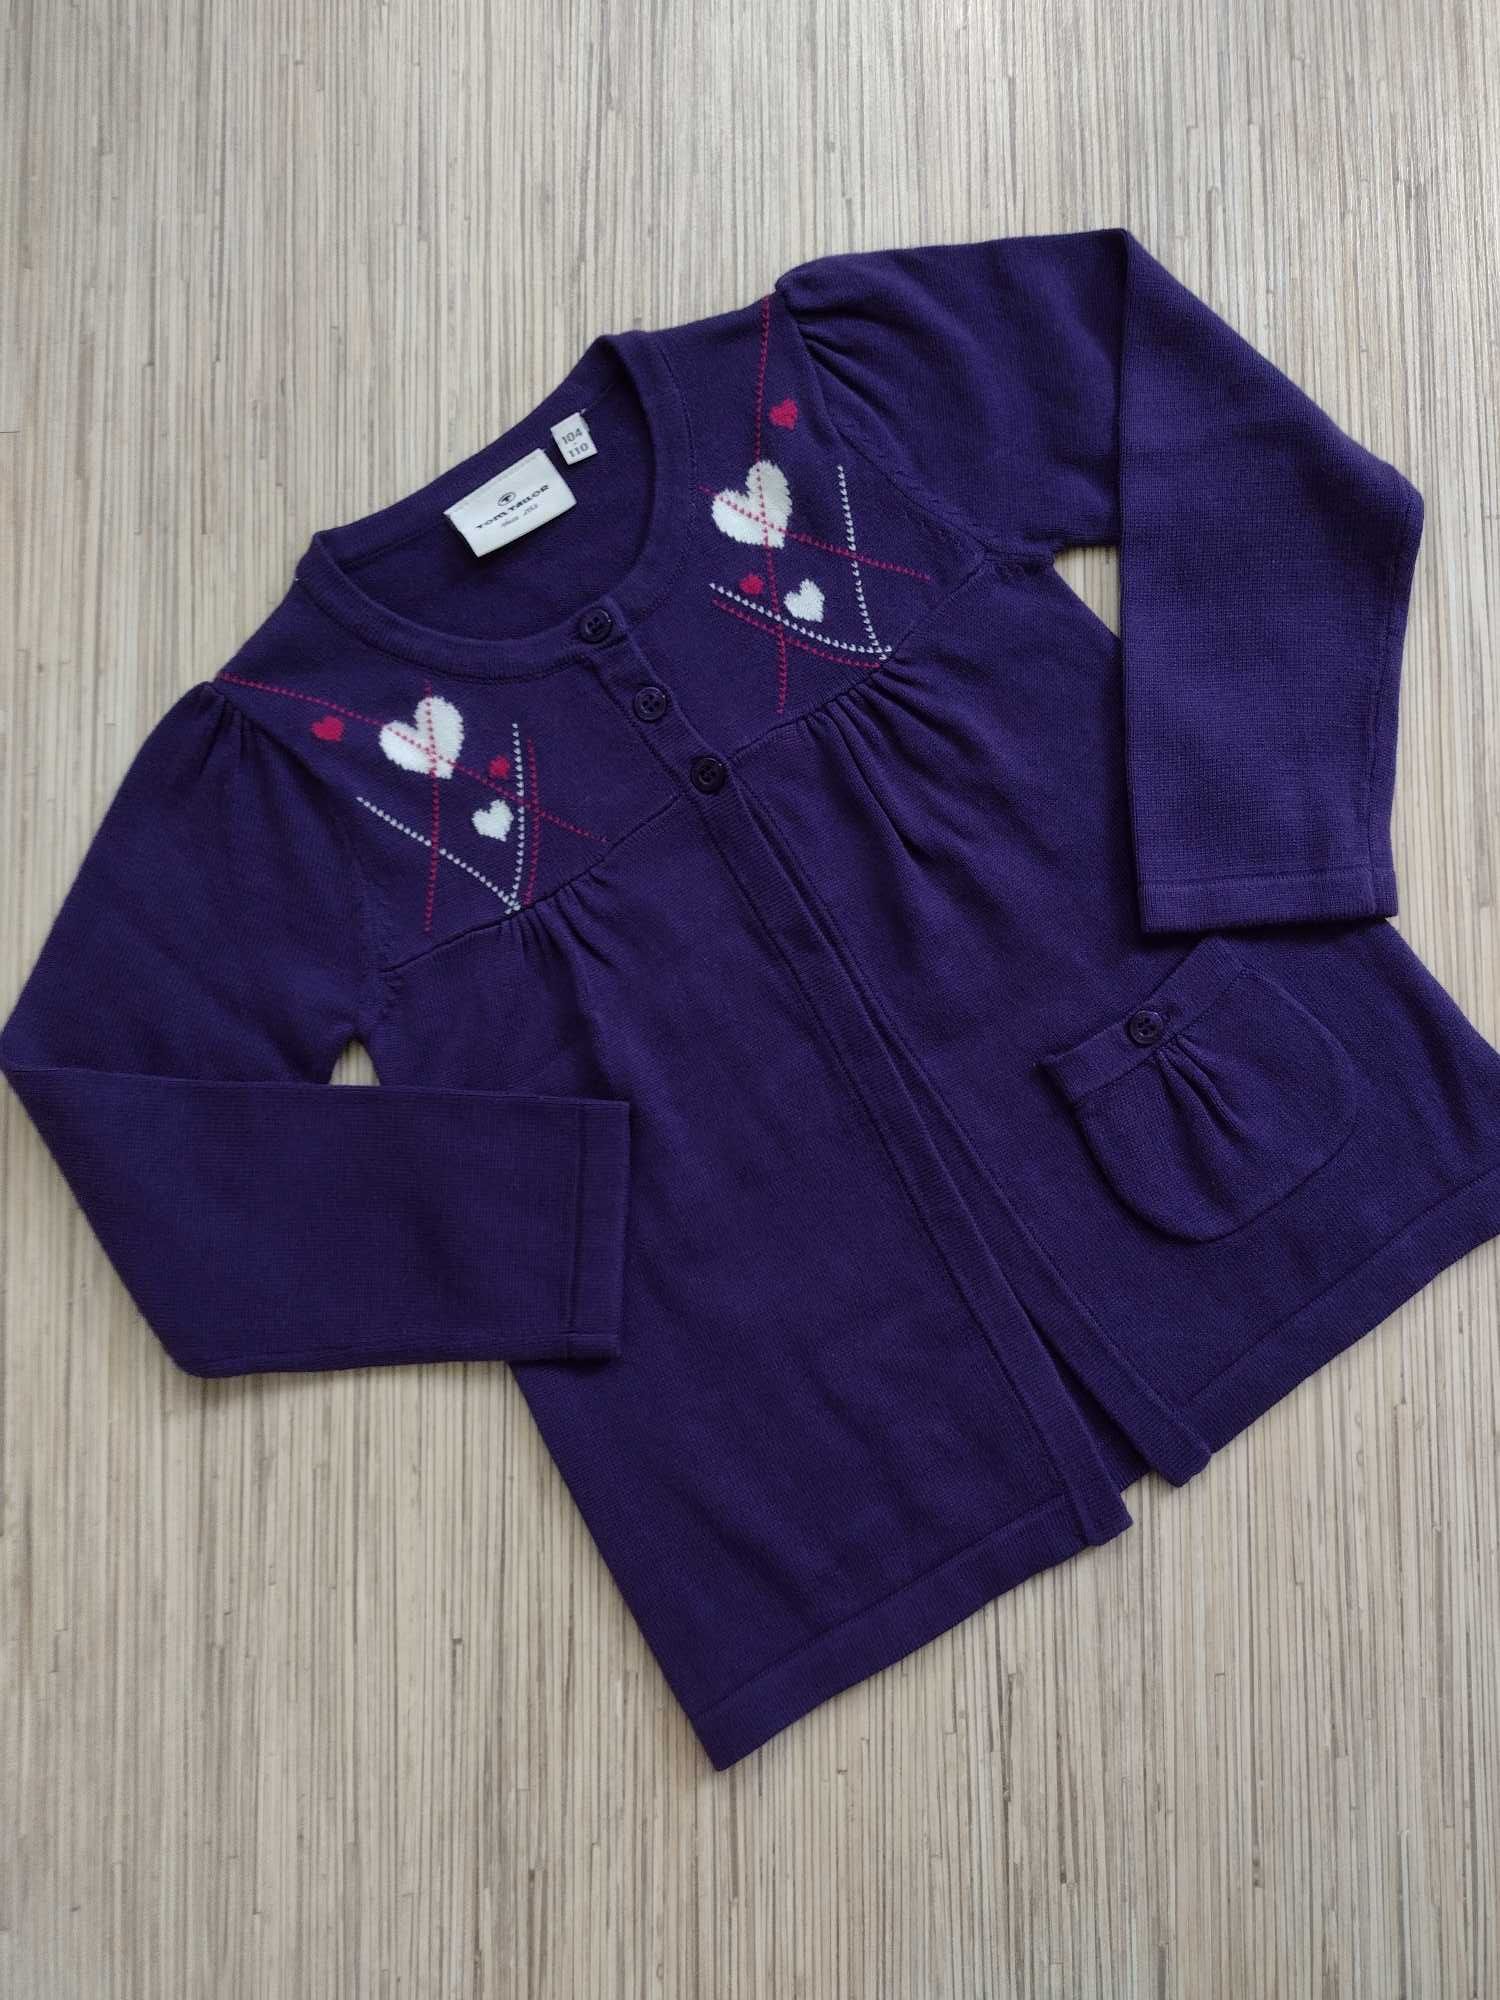 TOM TAILOR, rozmiar 104-110, sweter / narzutka dla dziewczynki